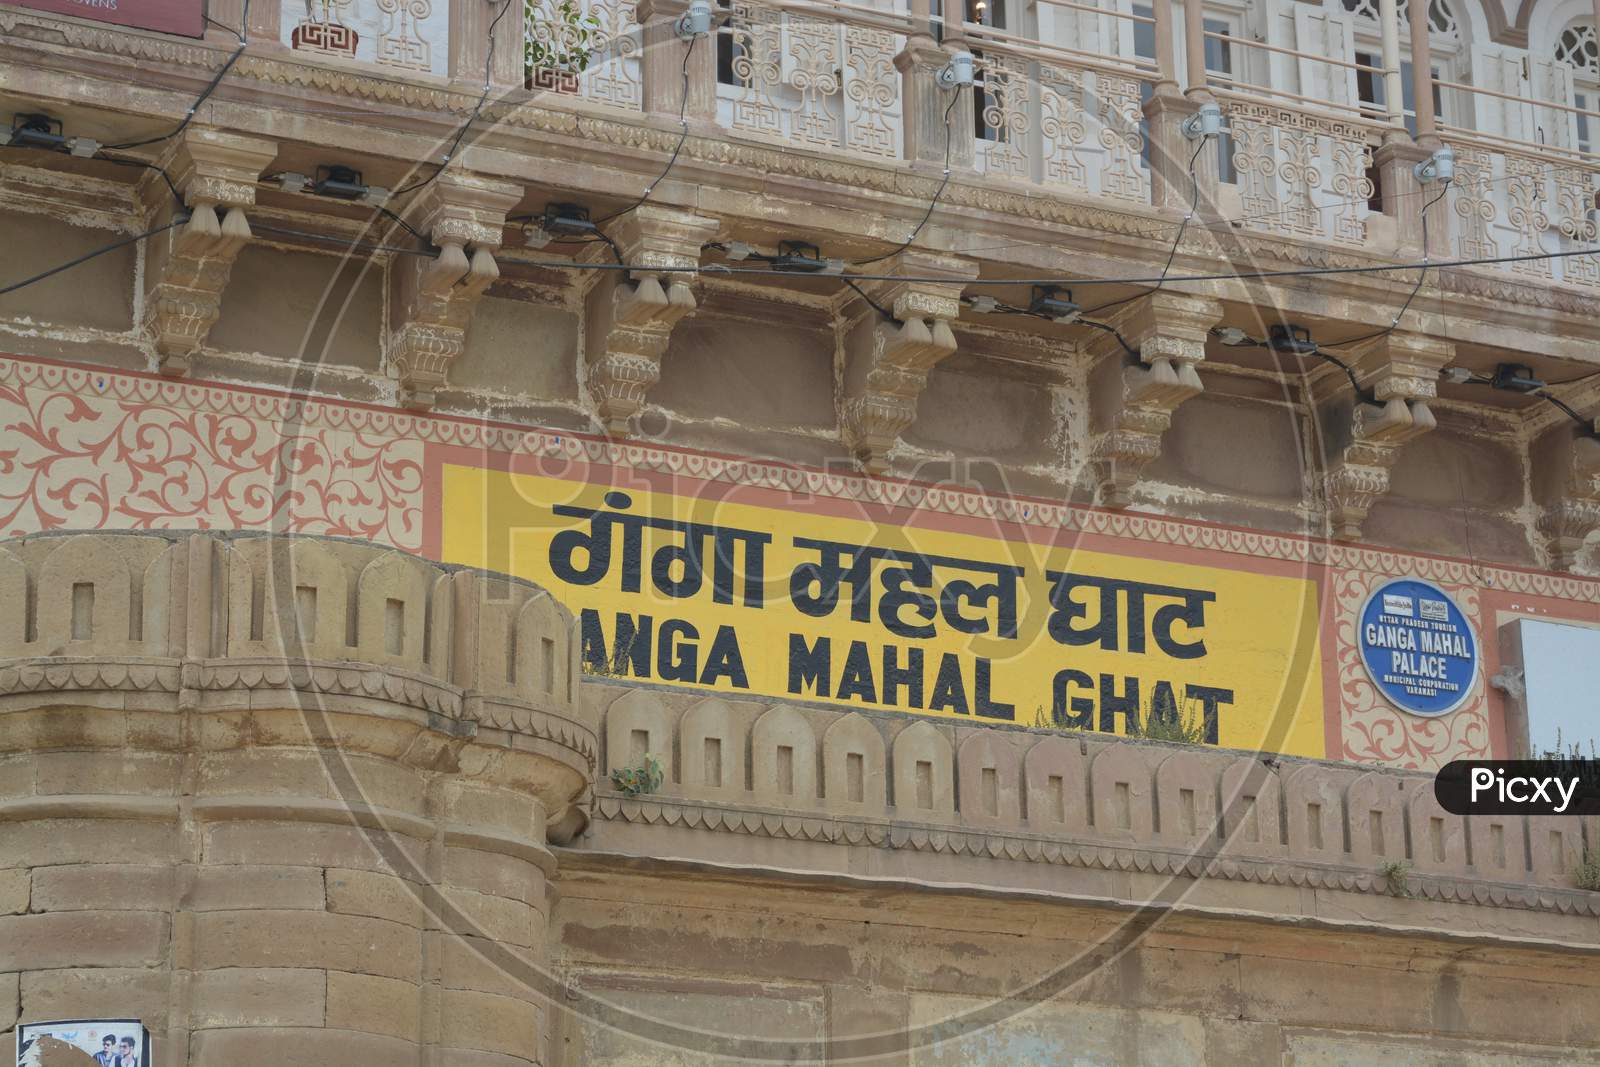 Ganga Mahal Ghat in Varanasi